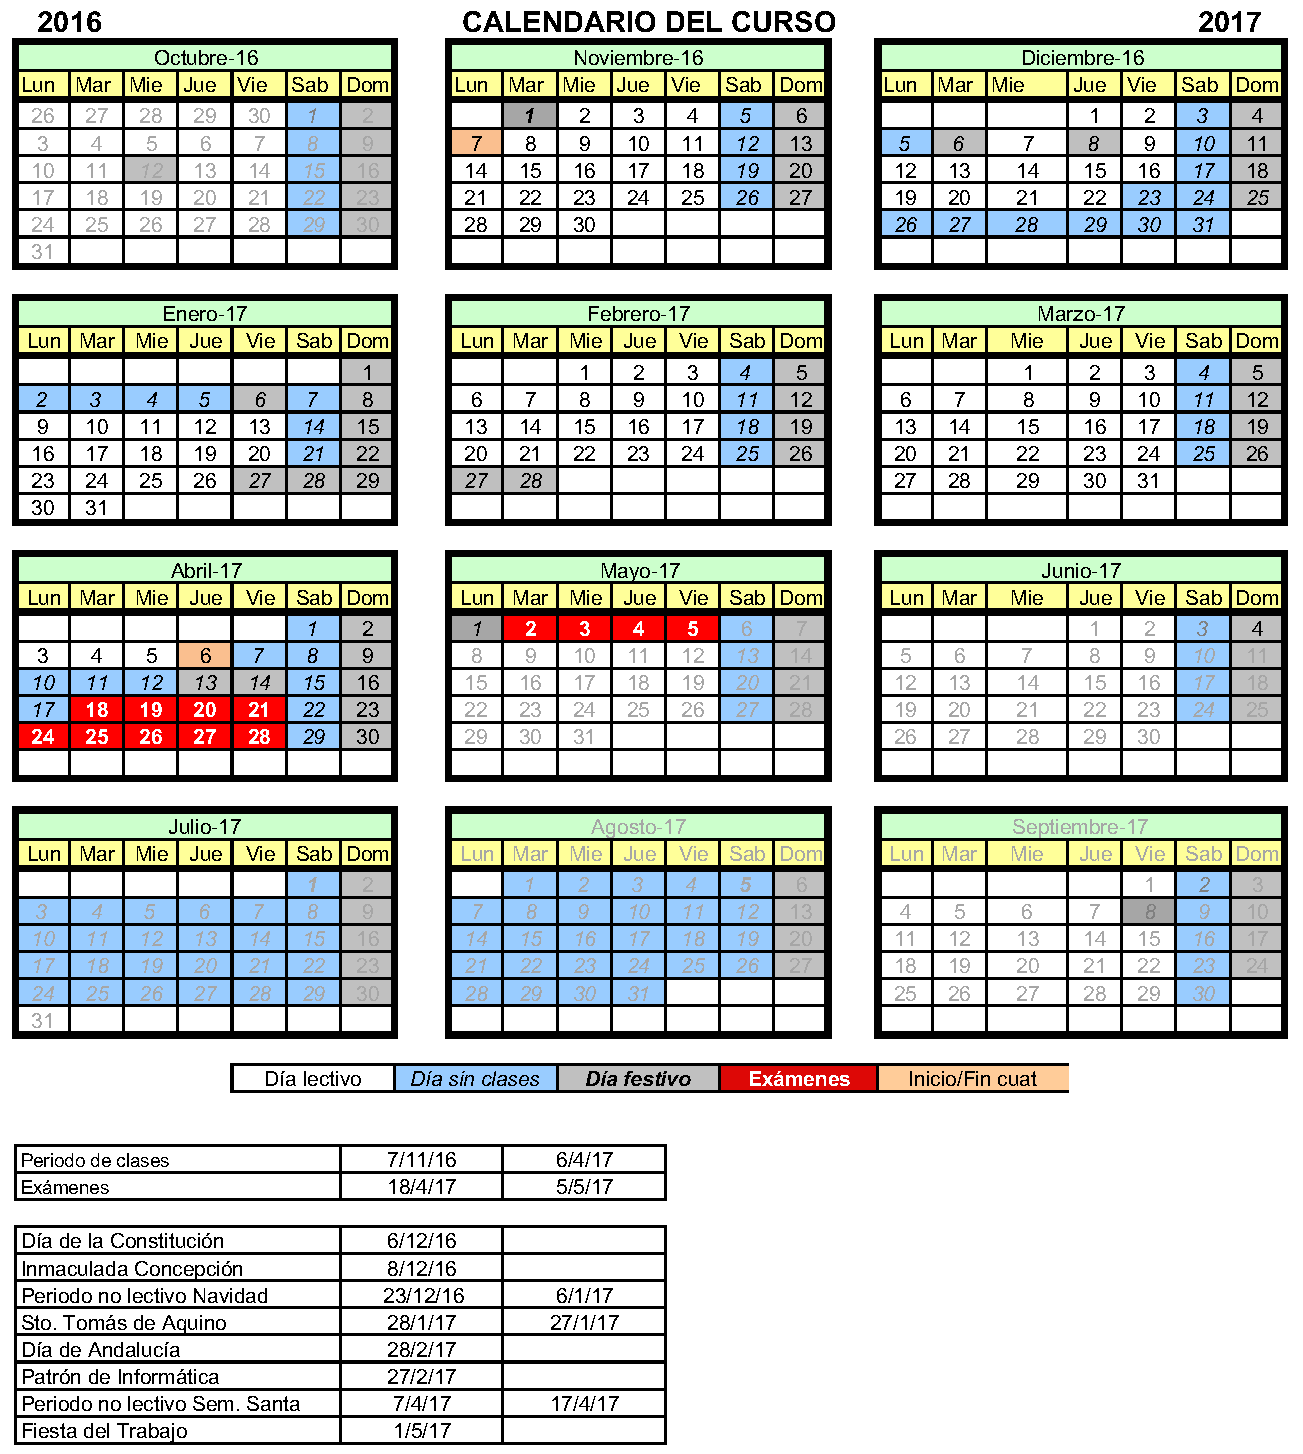 ETSI Informática - Calendario escolar adaptación 2016-17